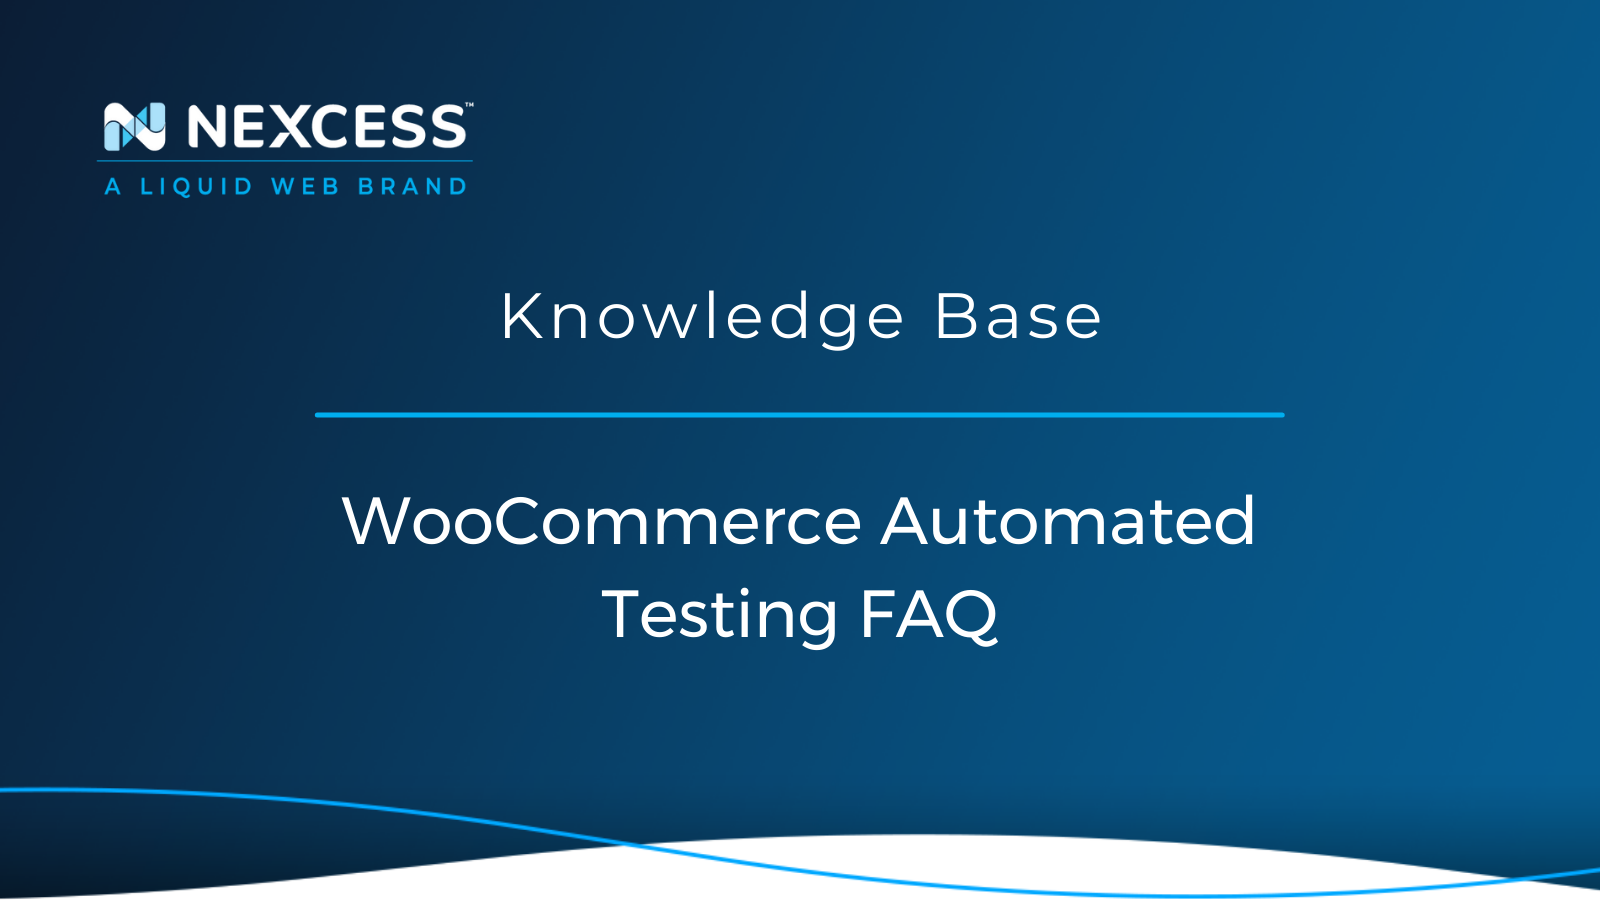 WooCommerce Automated Testing FAQ